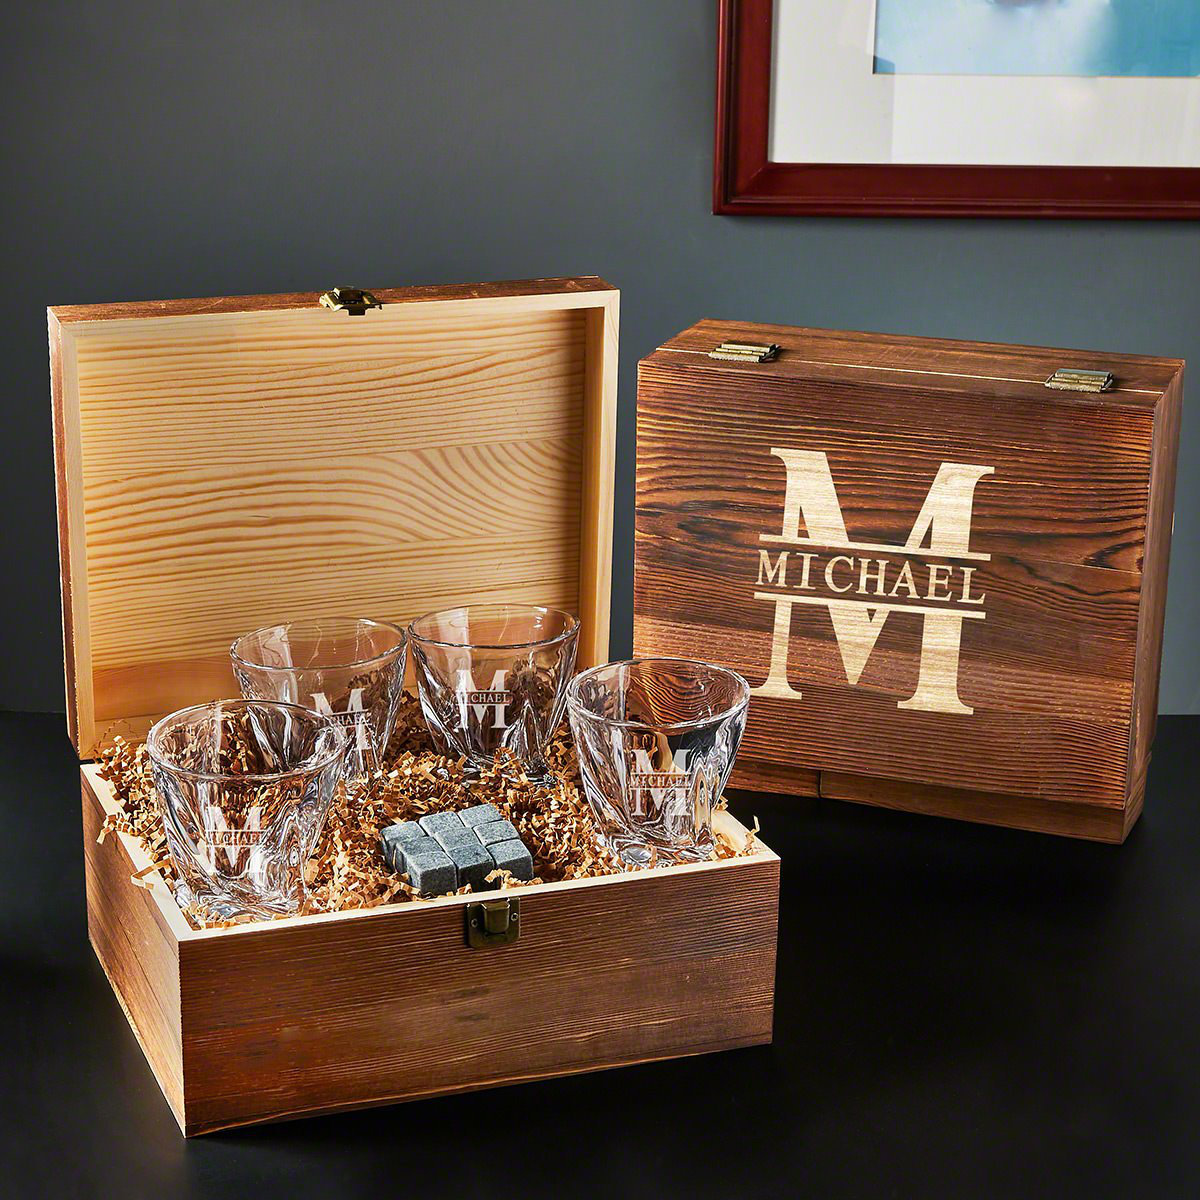 Custom Square Whiskey Glasses, Set of 4, Carmine Design by Home Wet Bar